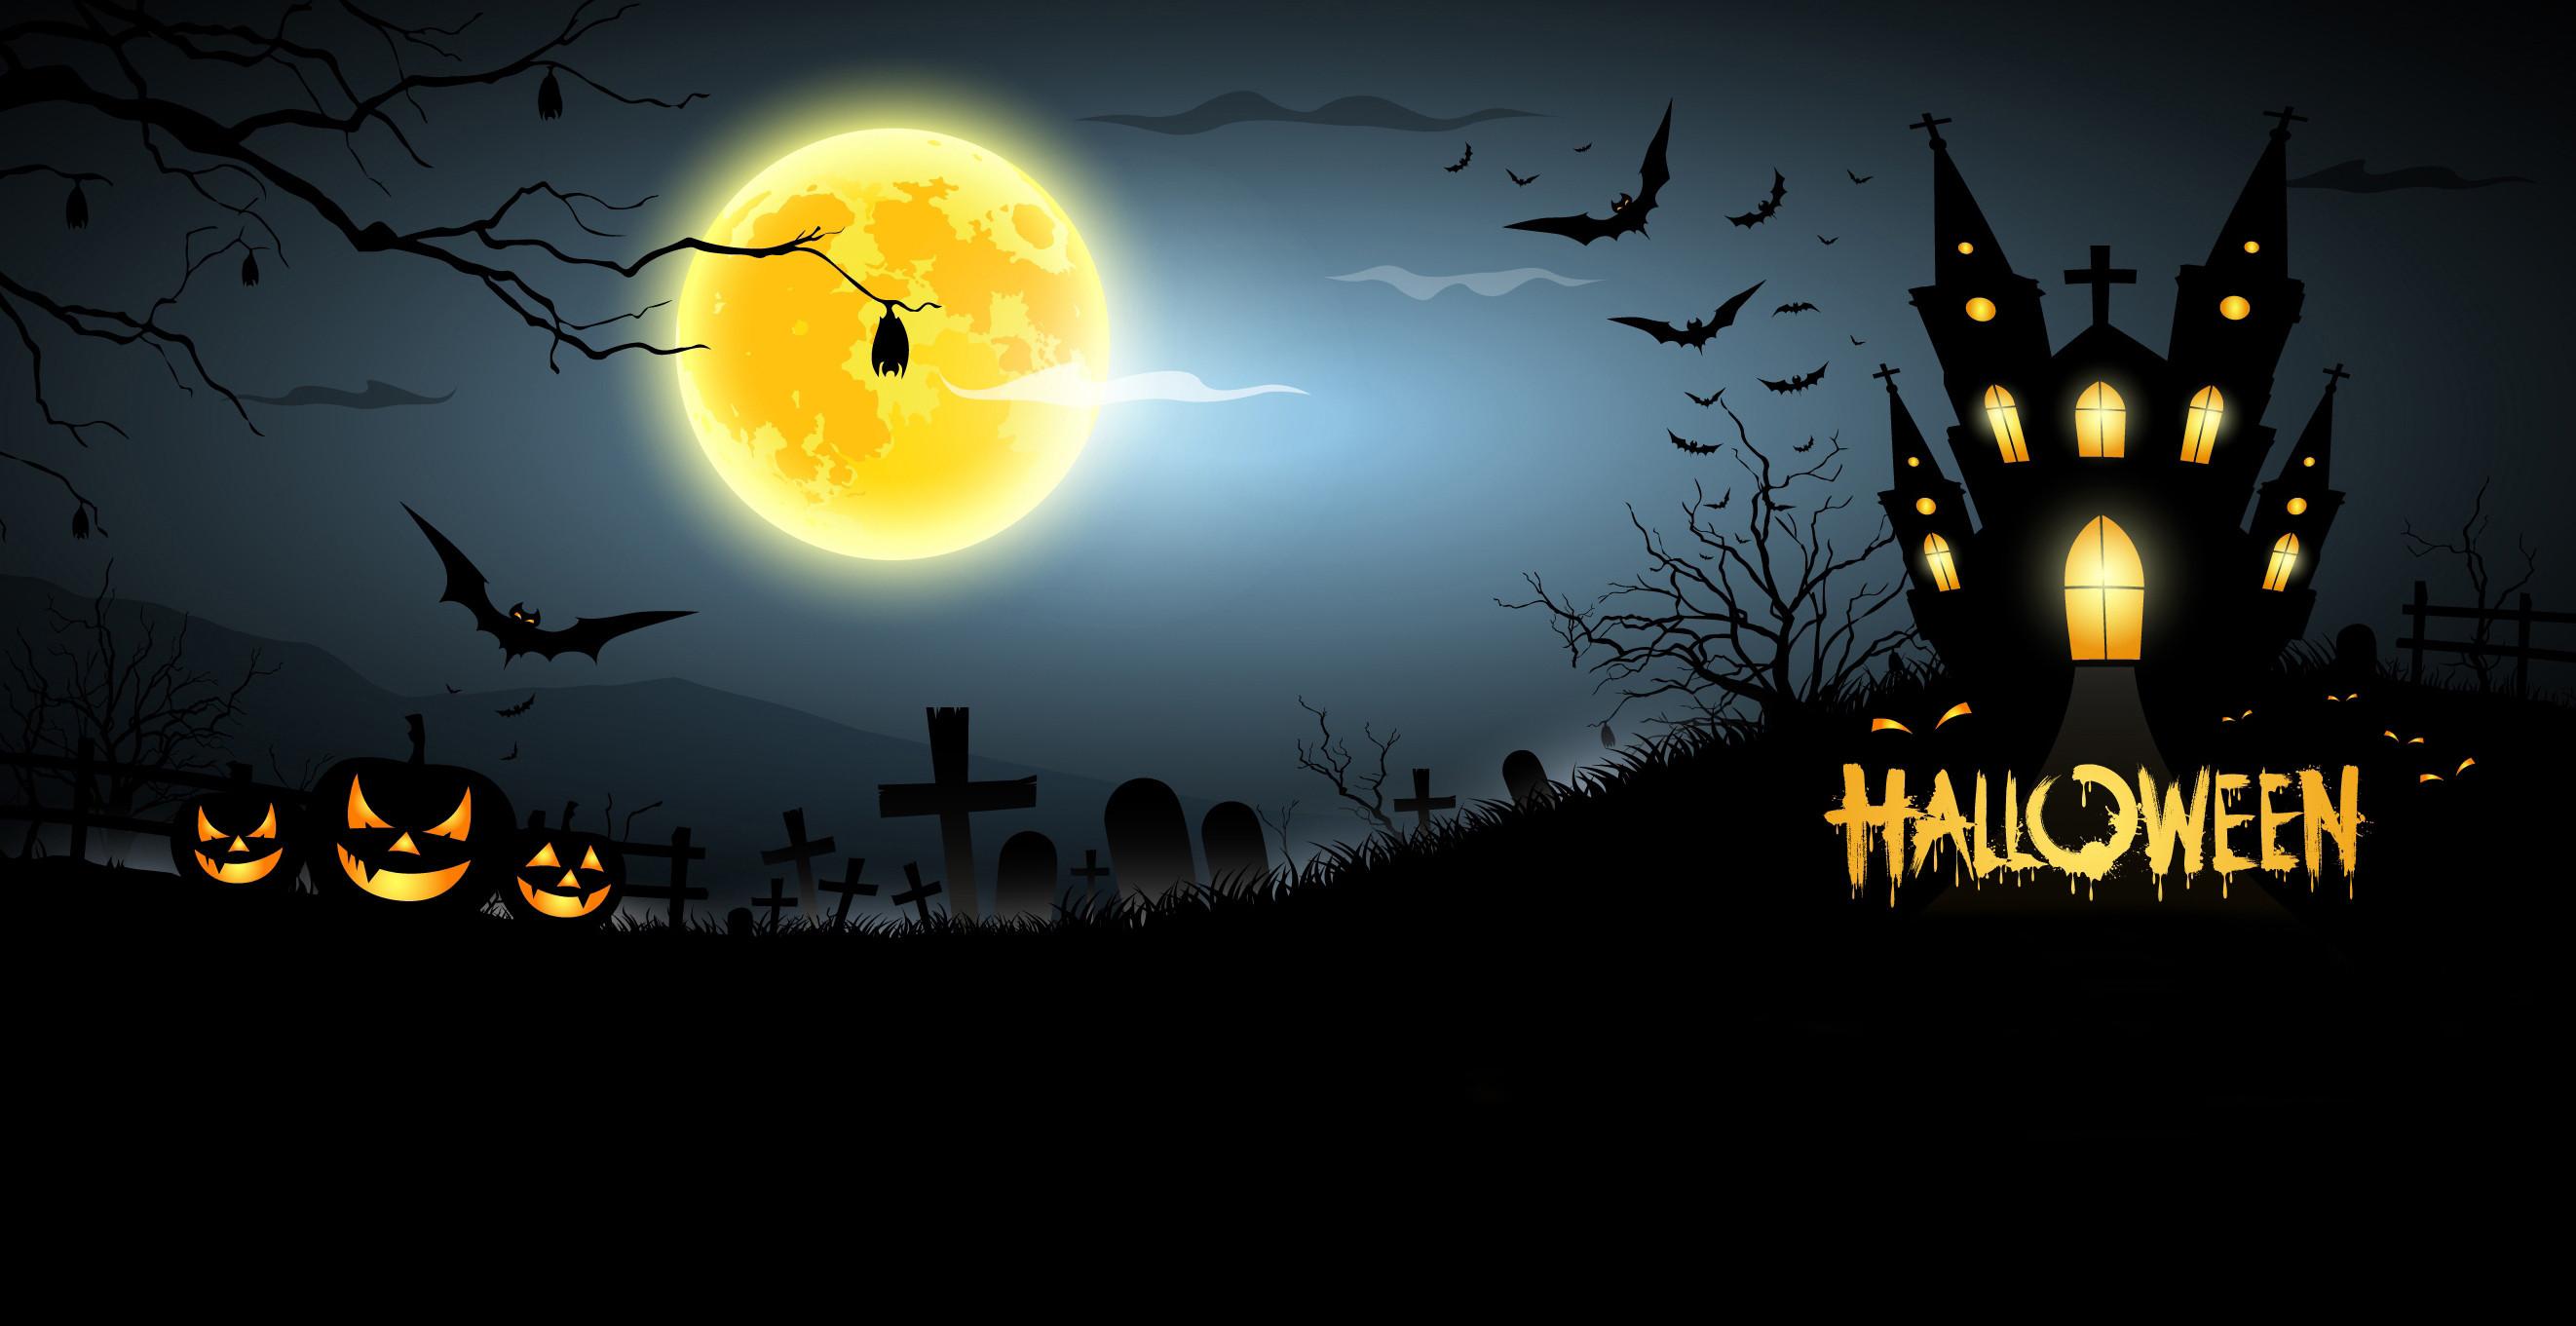 Halloween Cartoon Wallpapers - Top Free Halloween Cartoon Backgrounds ...